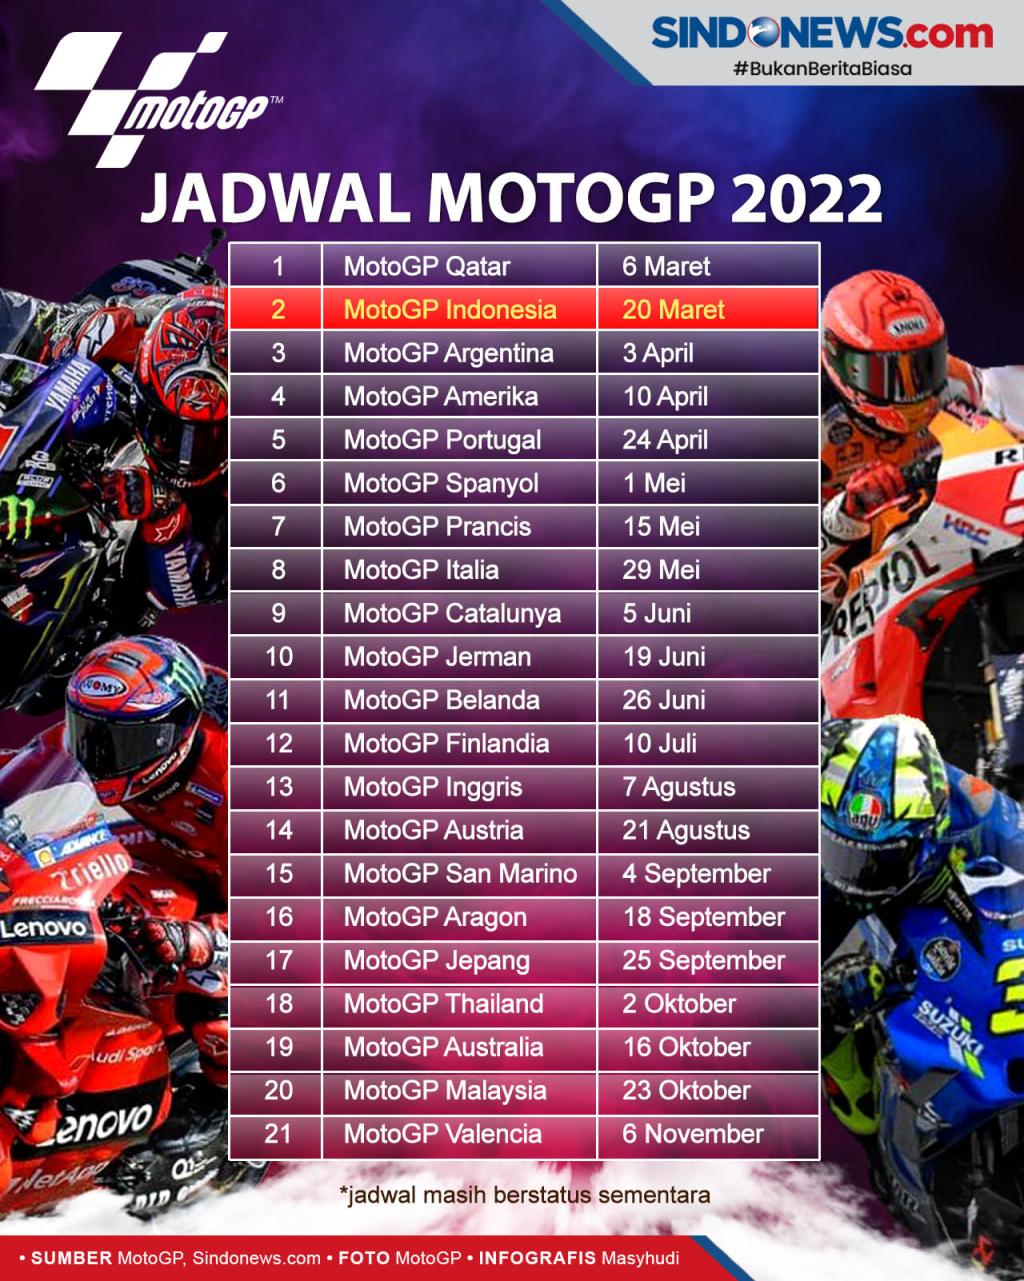 Jadwal motogp 2022 live trans7